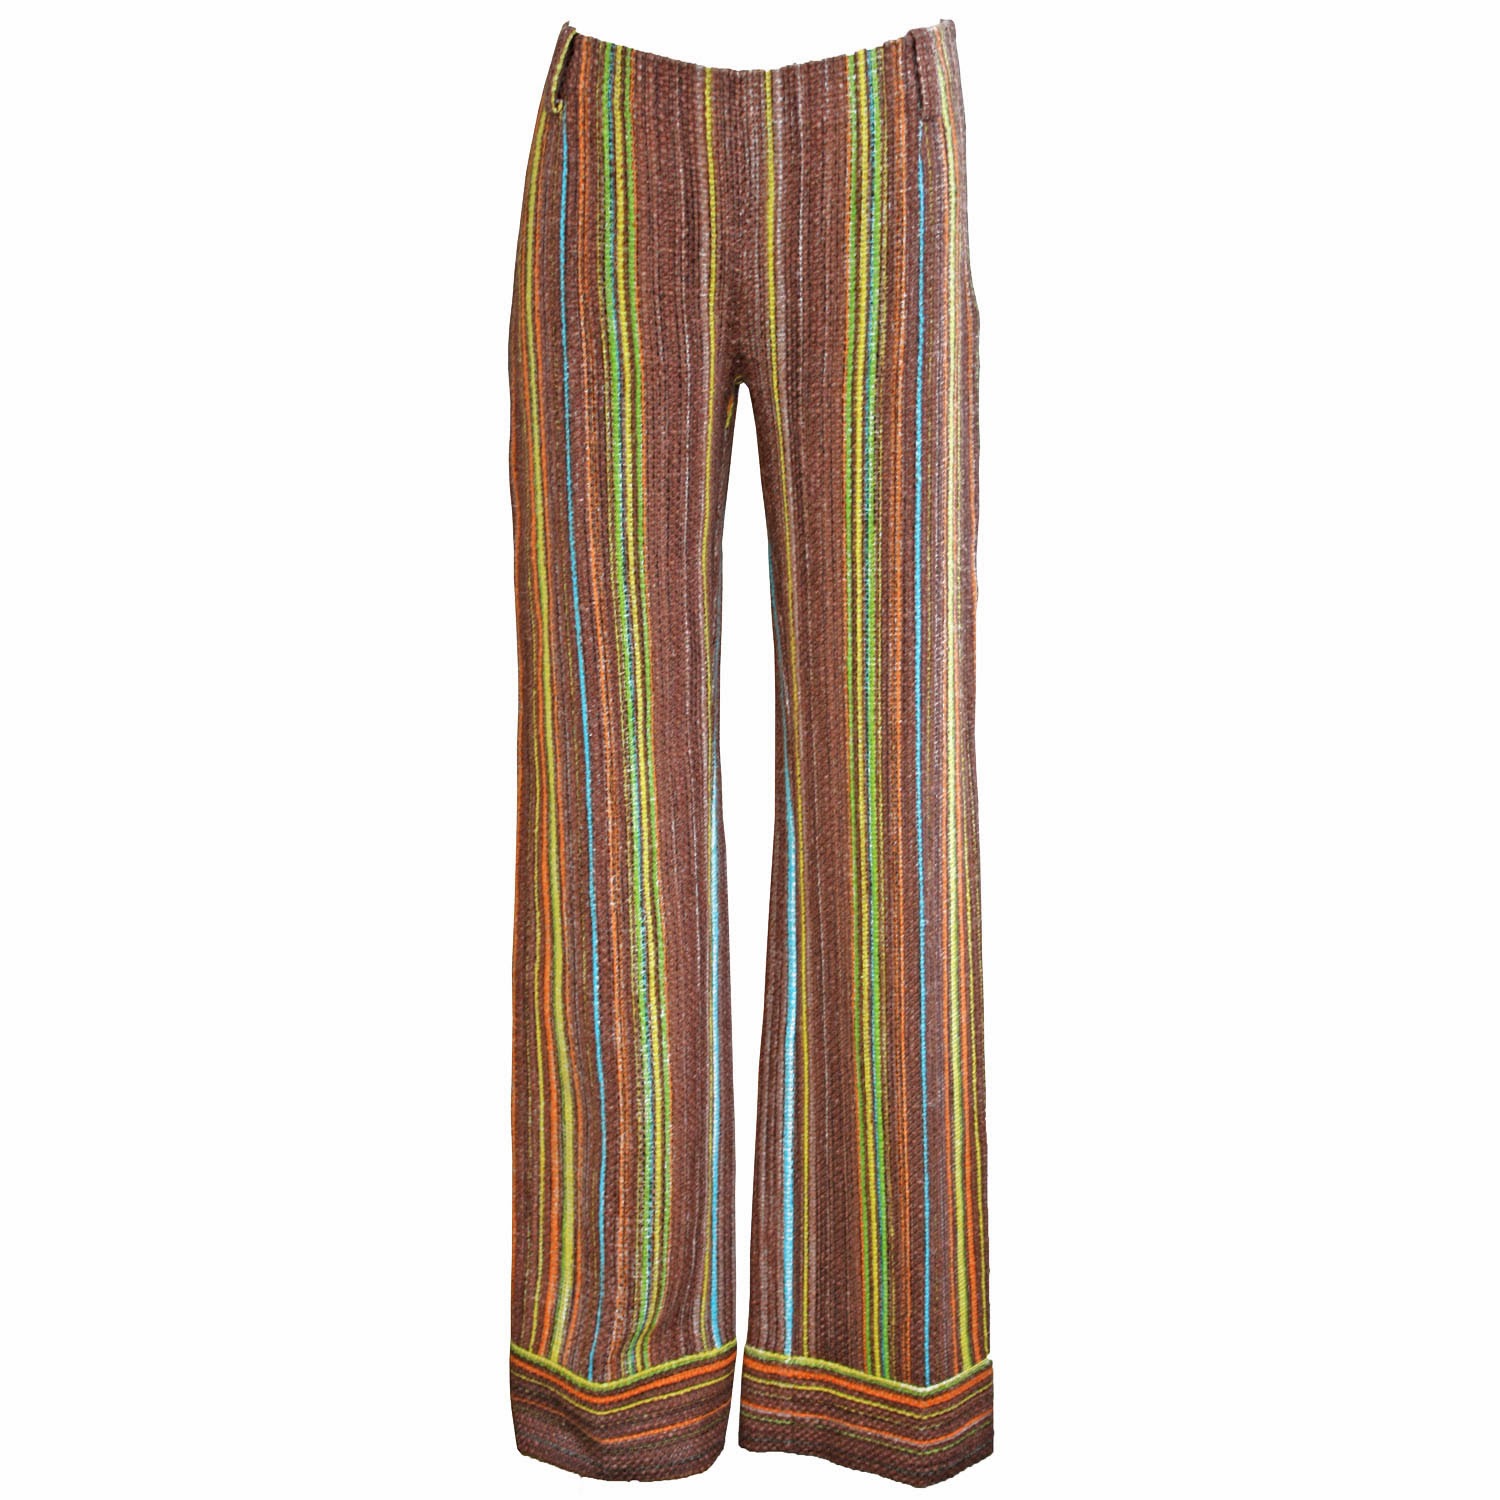 Featherstone Vintage: Just Listed! Missoni 70's Pants